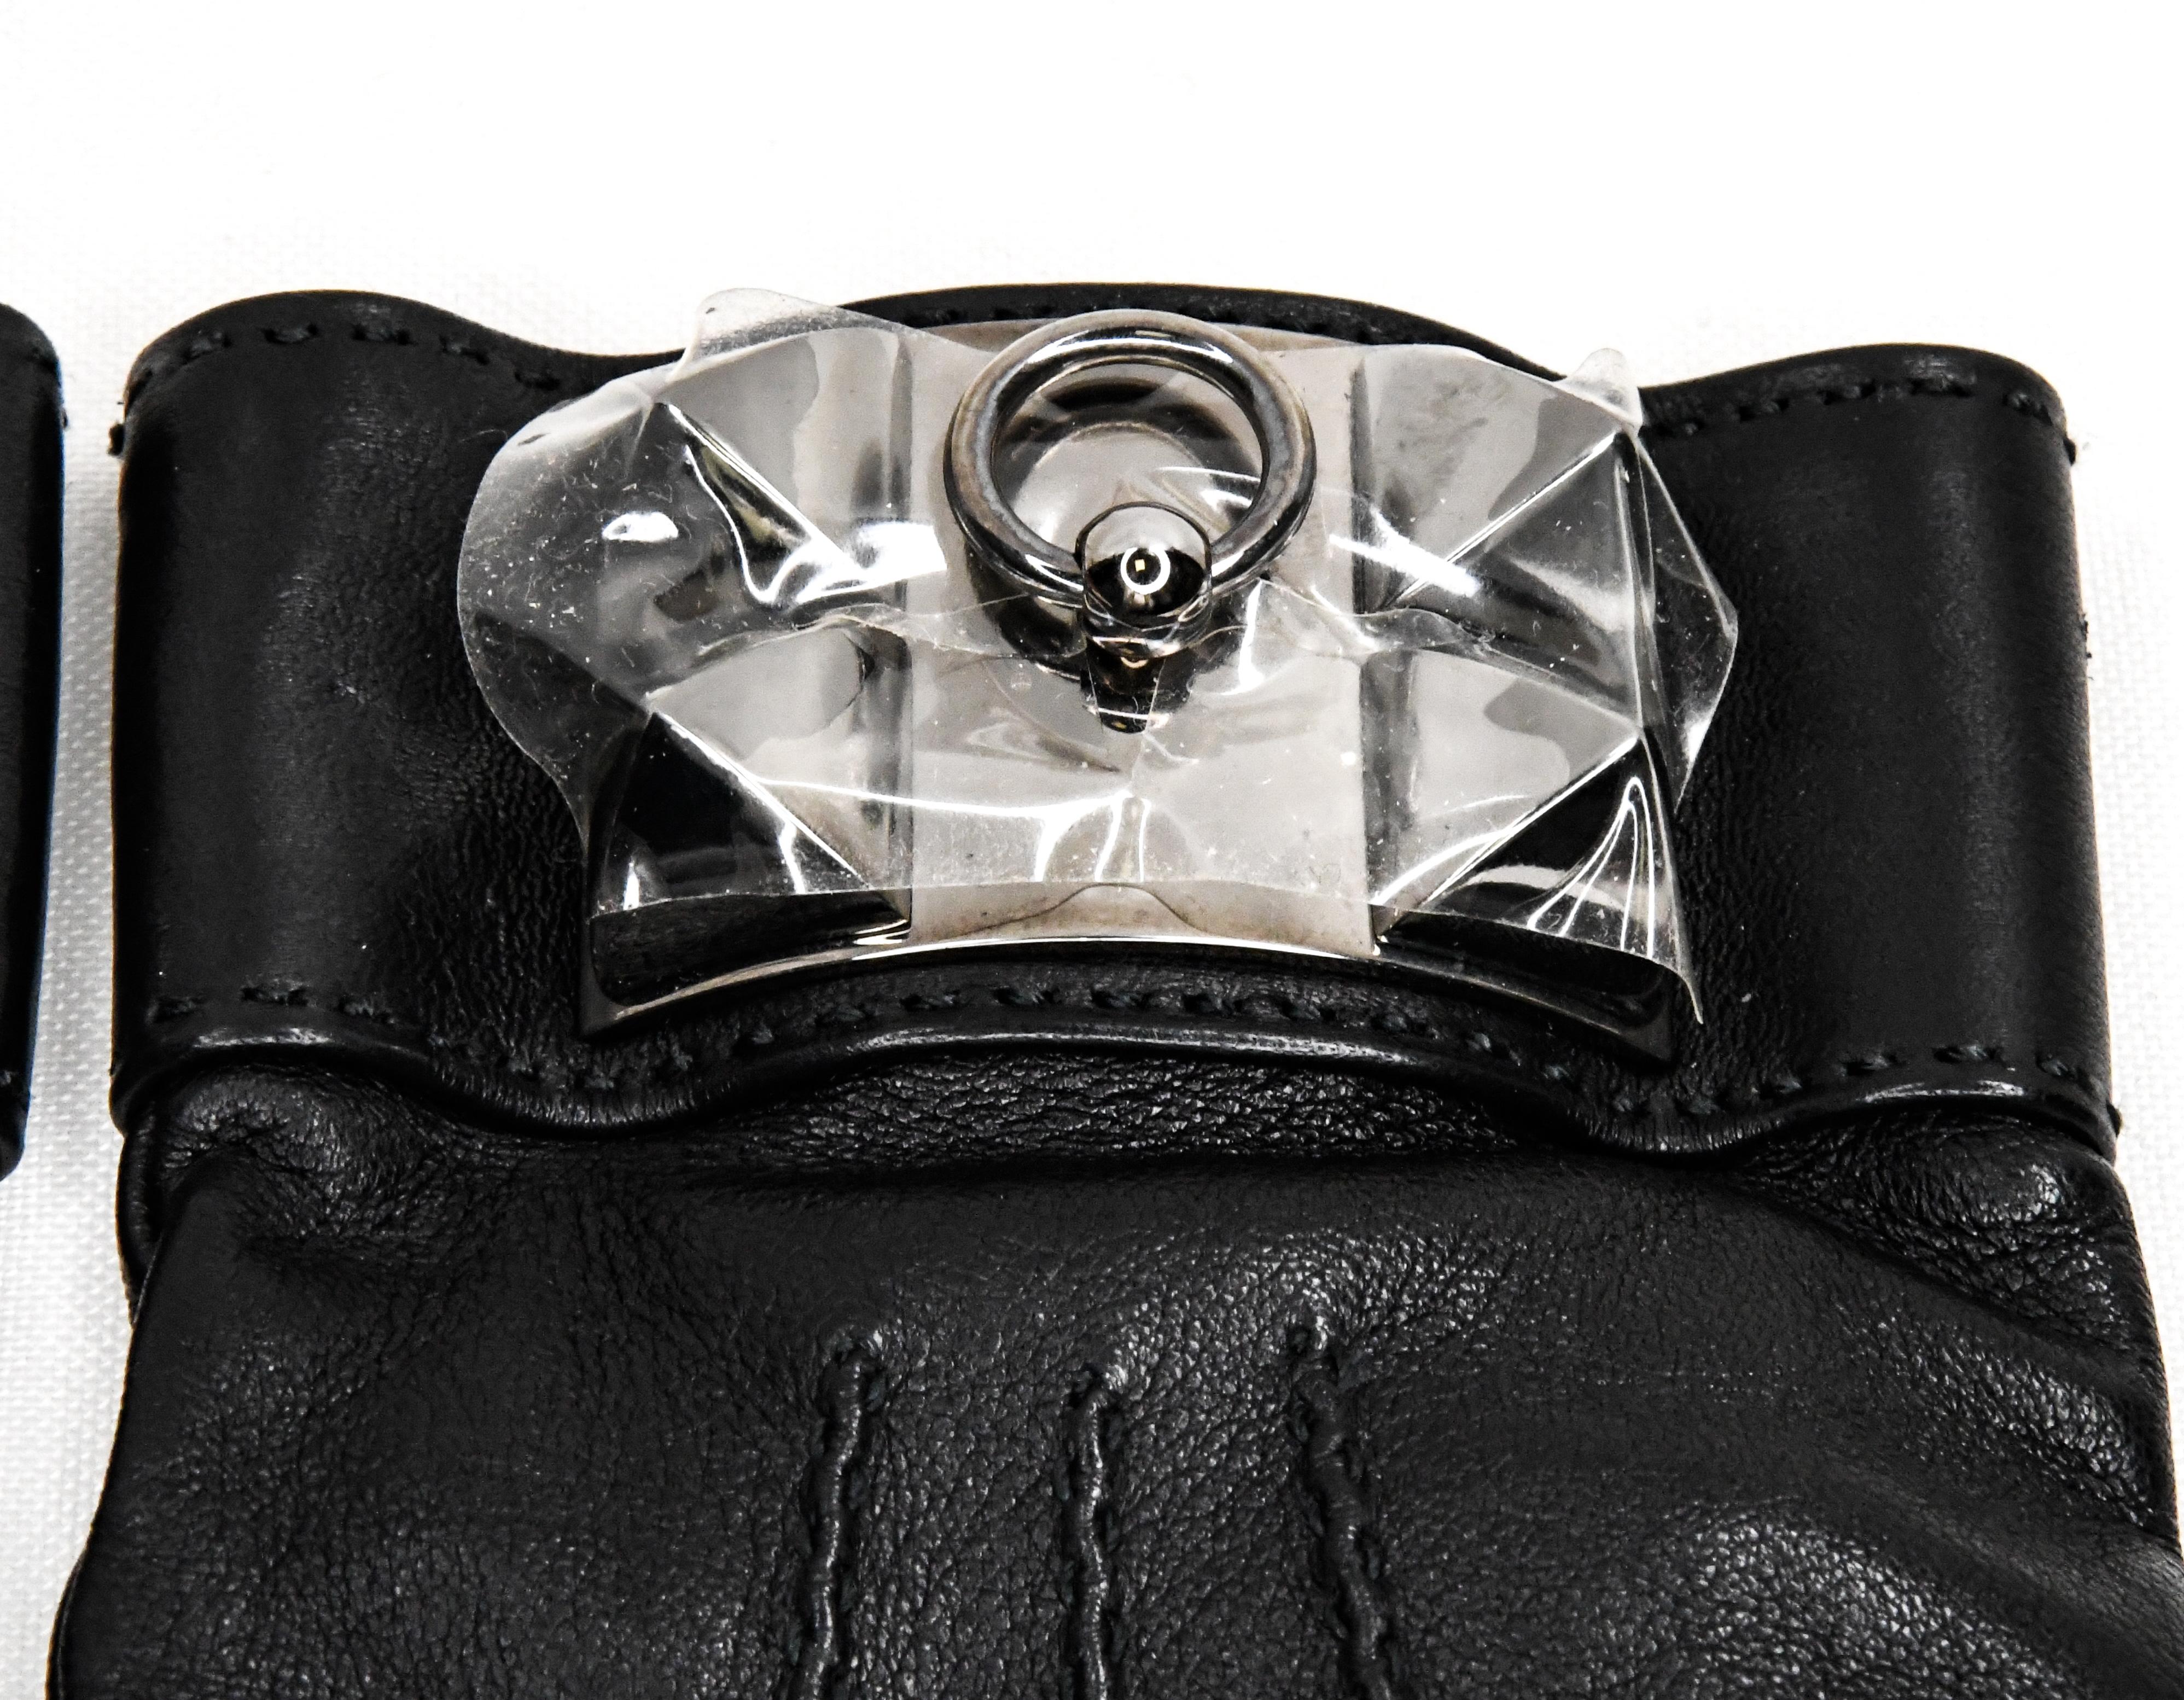 Black Hermès Medor Collier de Chien Lambskin Gloves New In Box Size 8